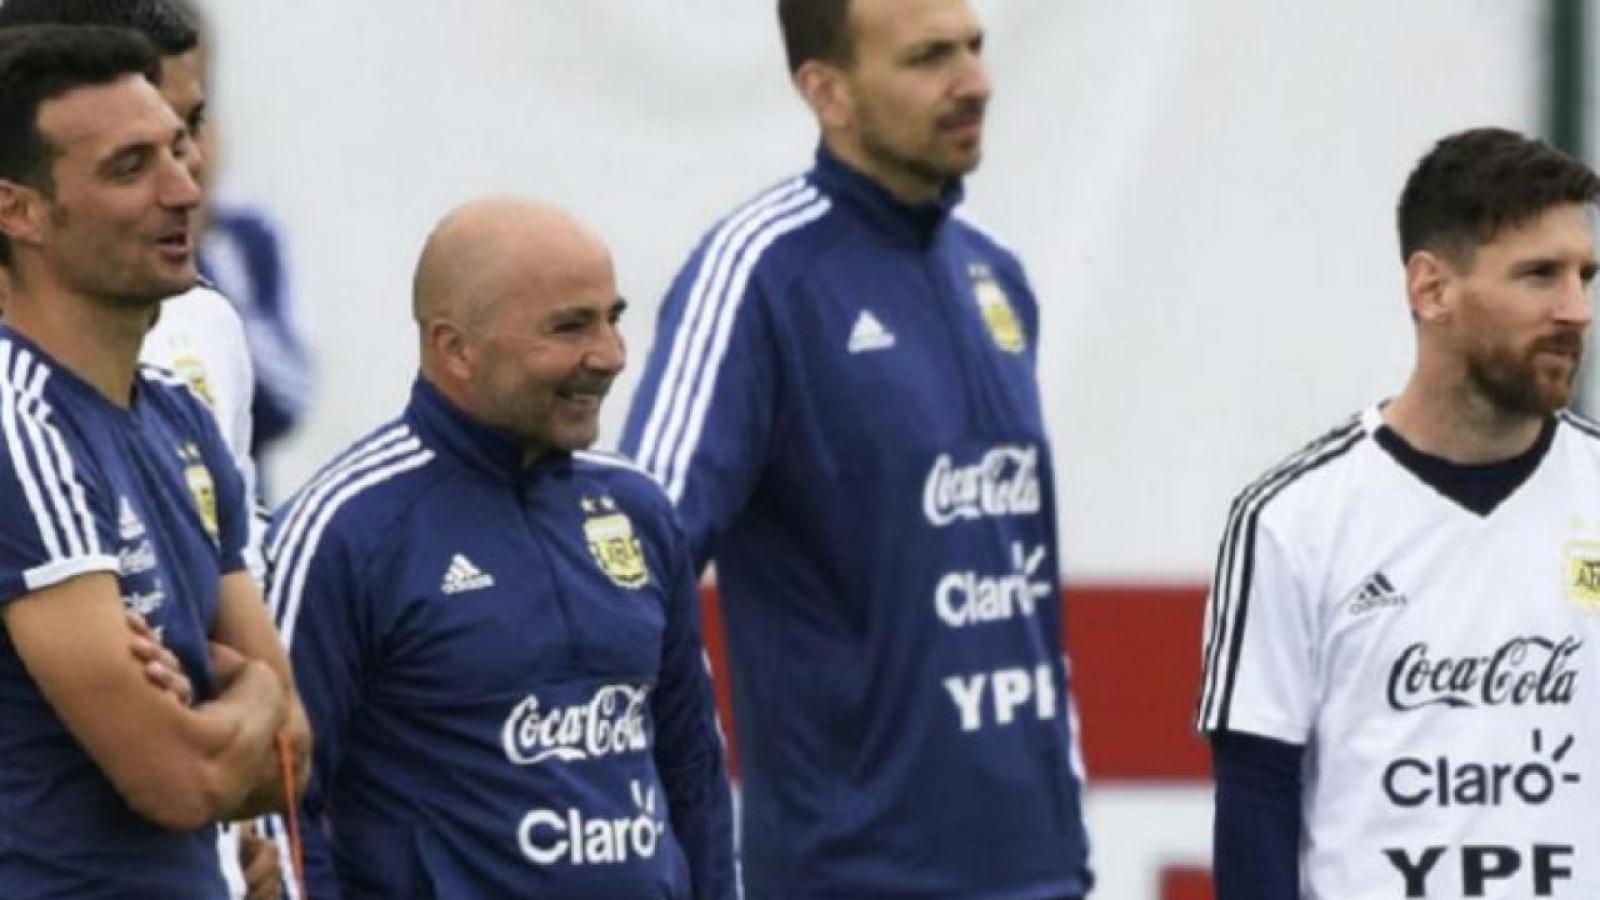 Imagen Sampaoli de un lado, Messi del otro. Scaloni fue al Mundial 2018 como ayudante de campo